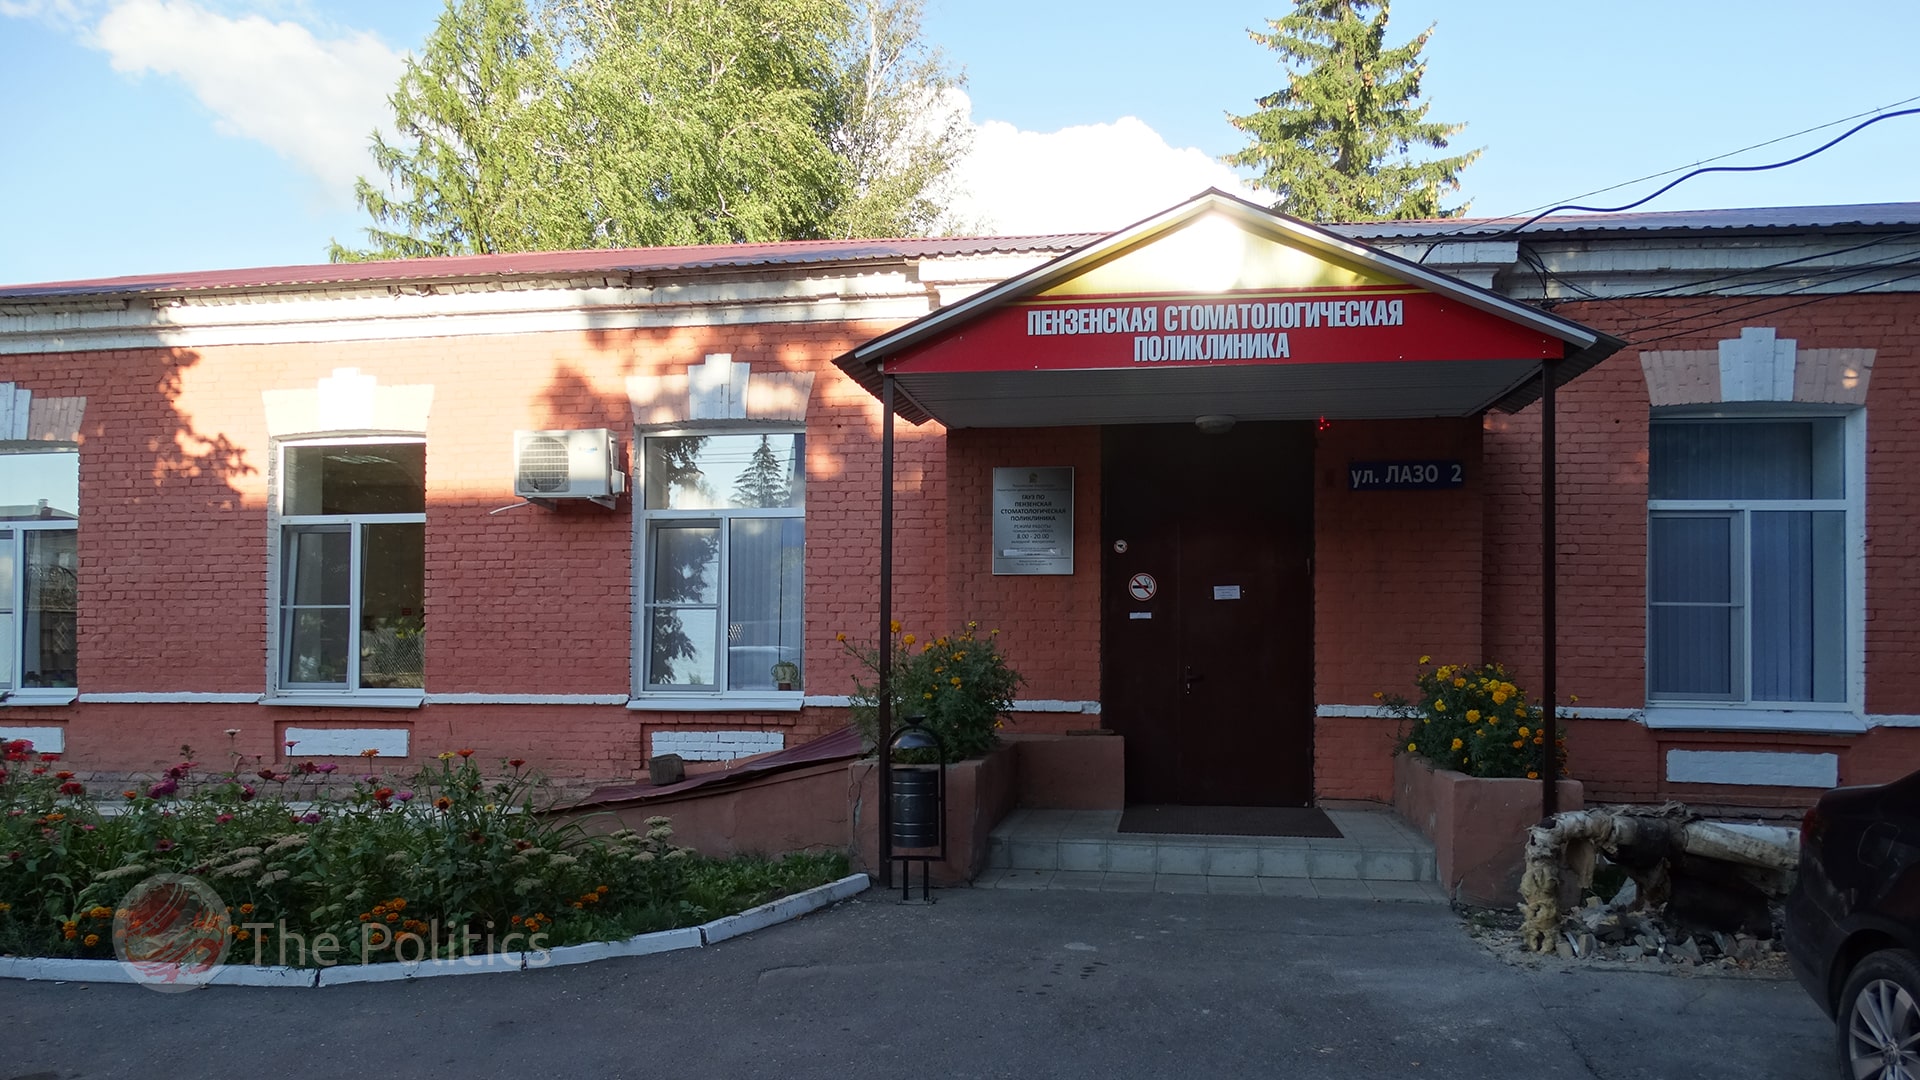 Белозерцев купил участок где размещается государственная поликлиника